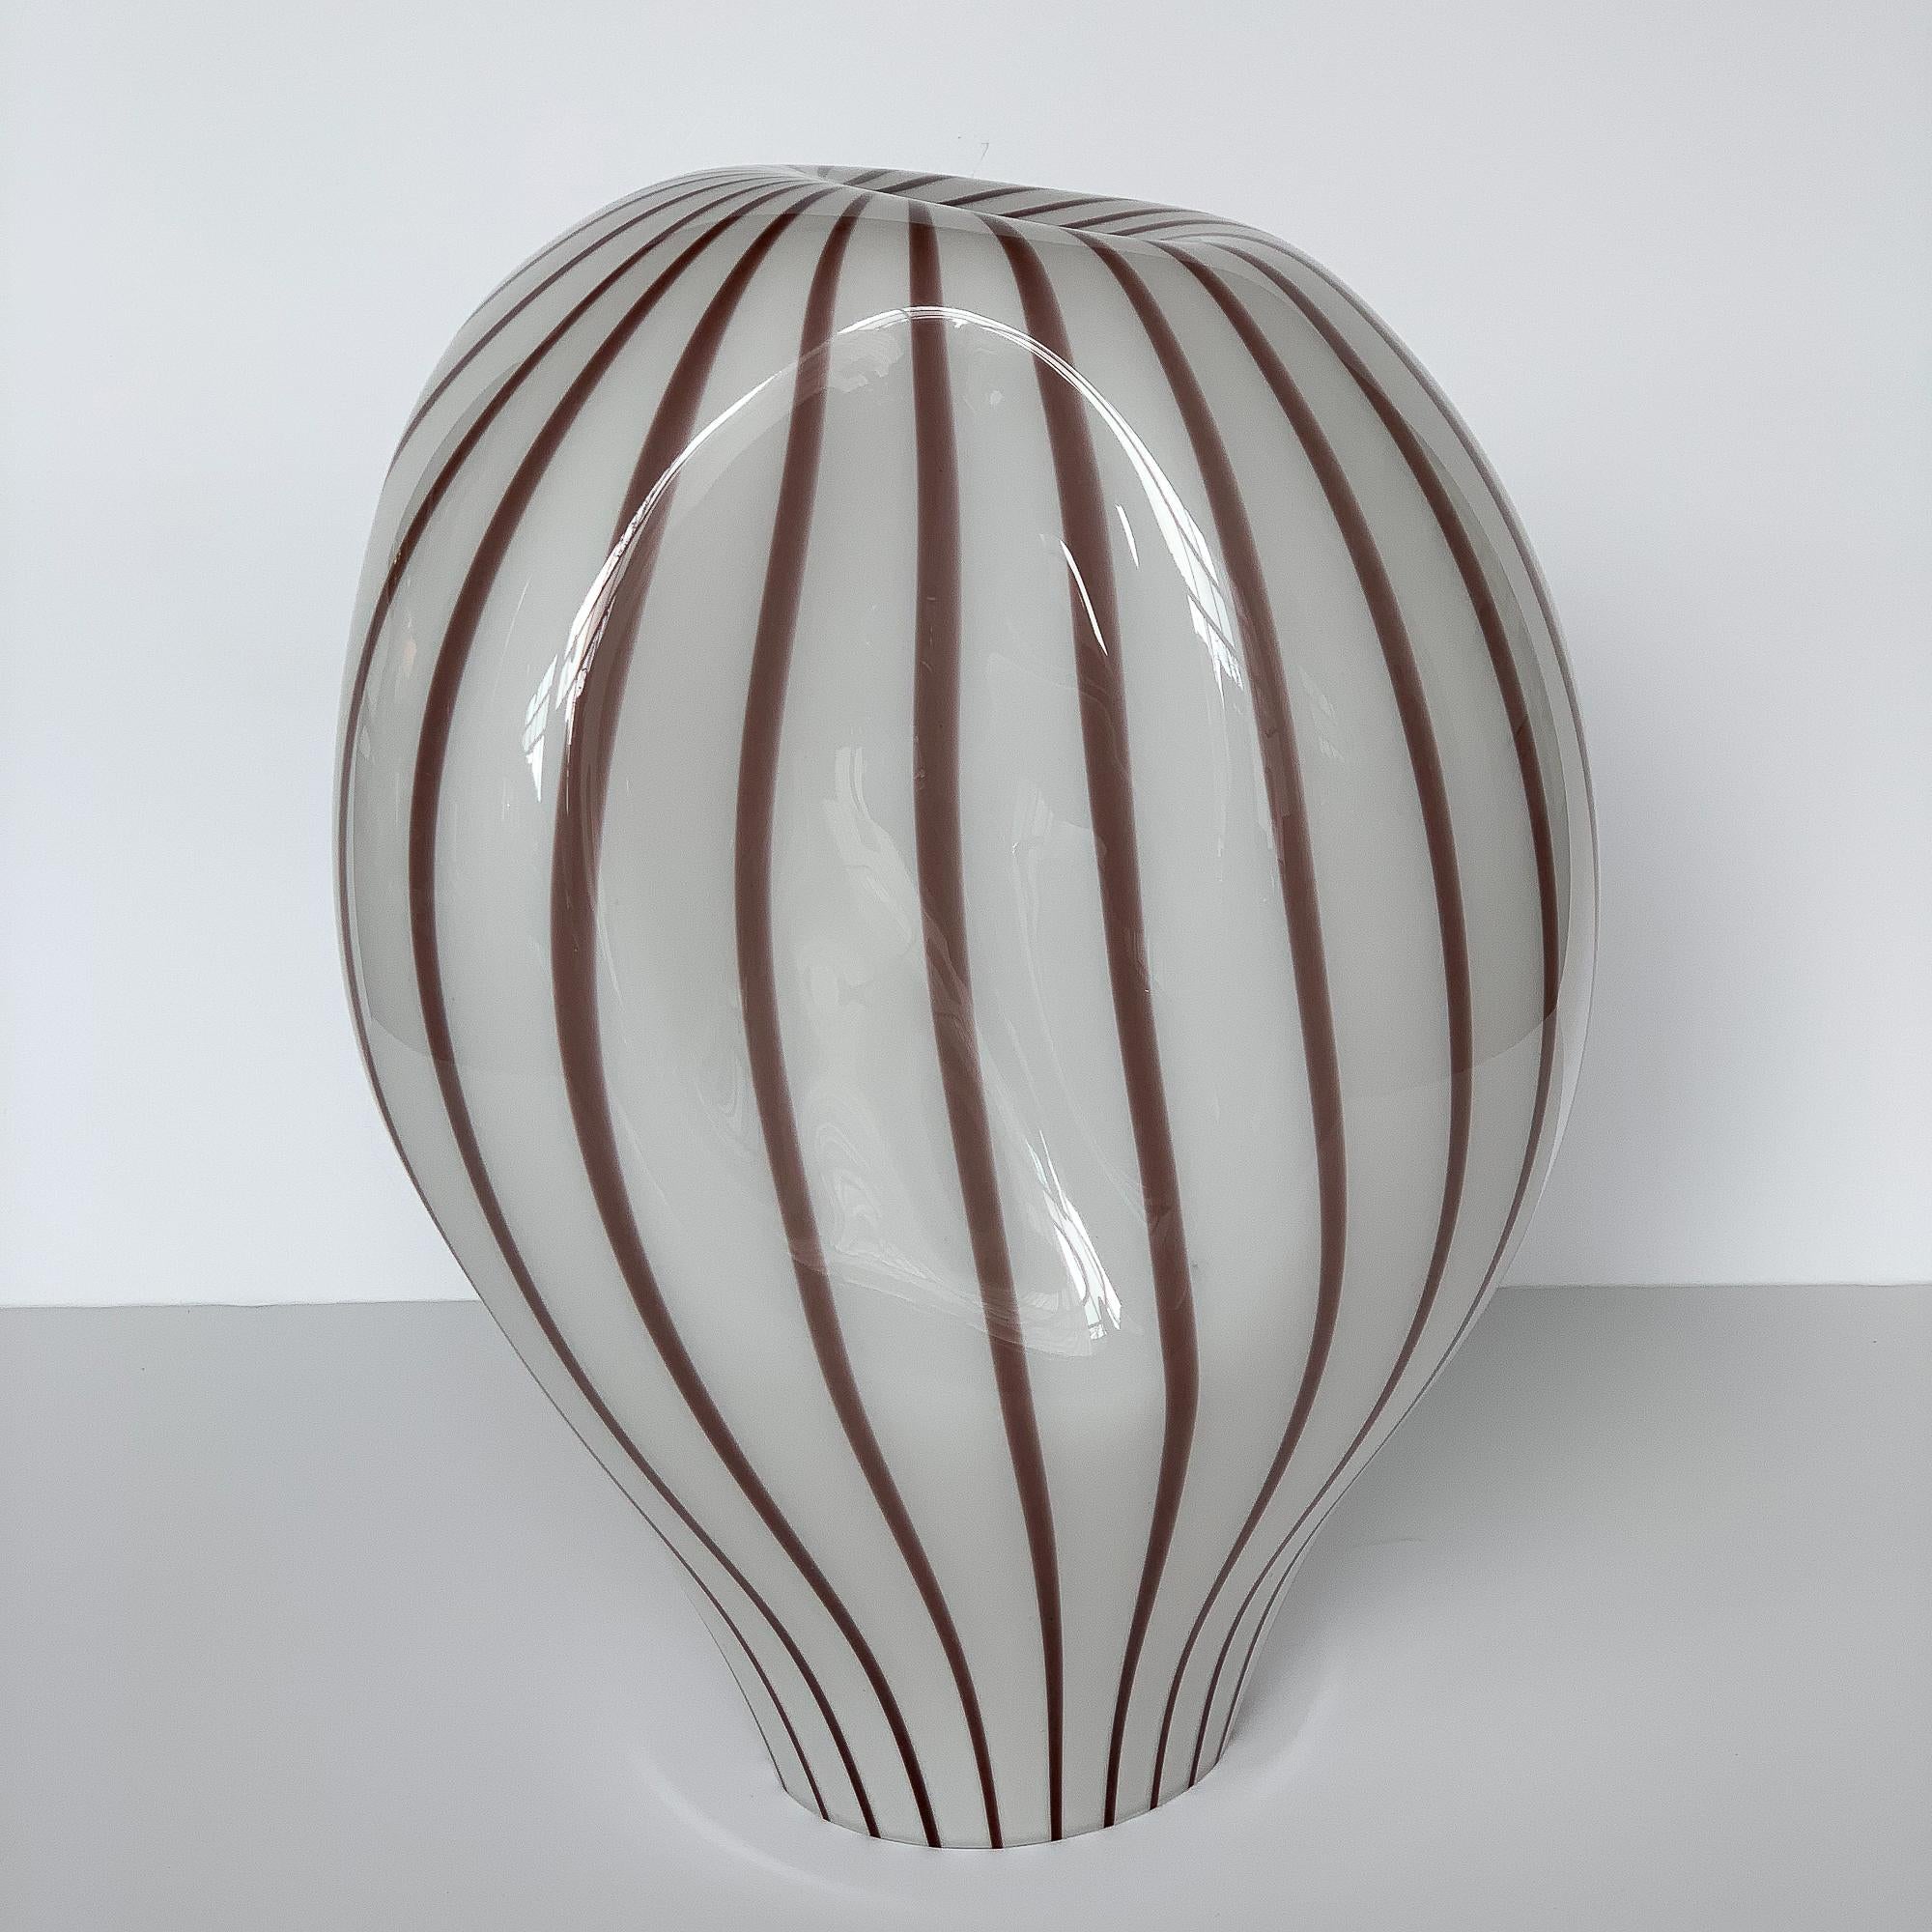 Italian Lino Tagliapietra Murano Glass Striped Balloon Table Lamp for Effetre